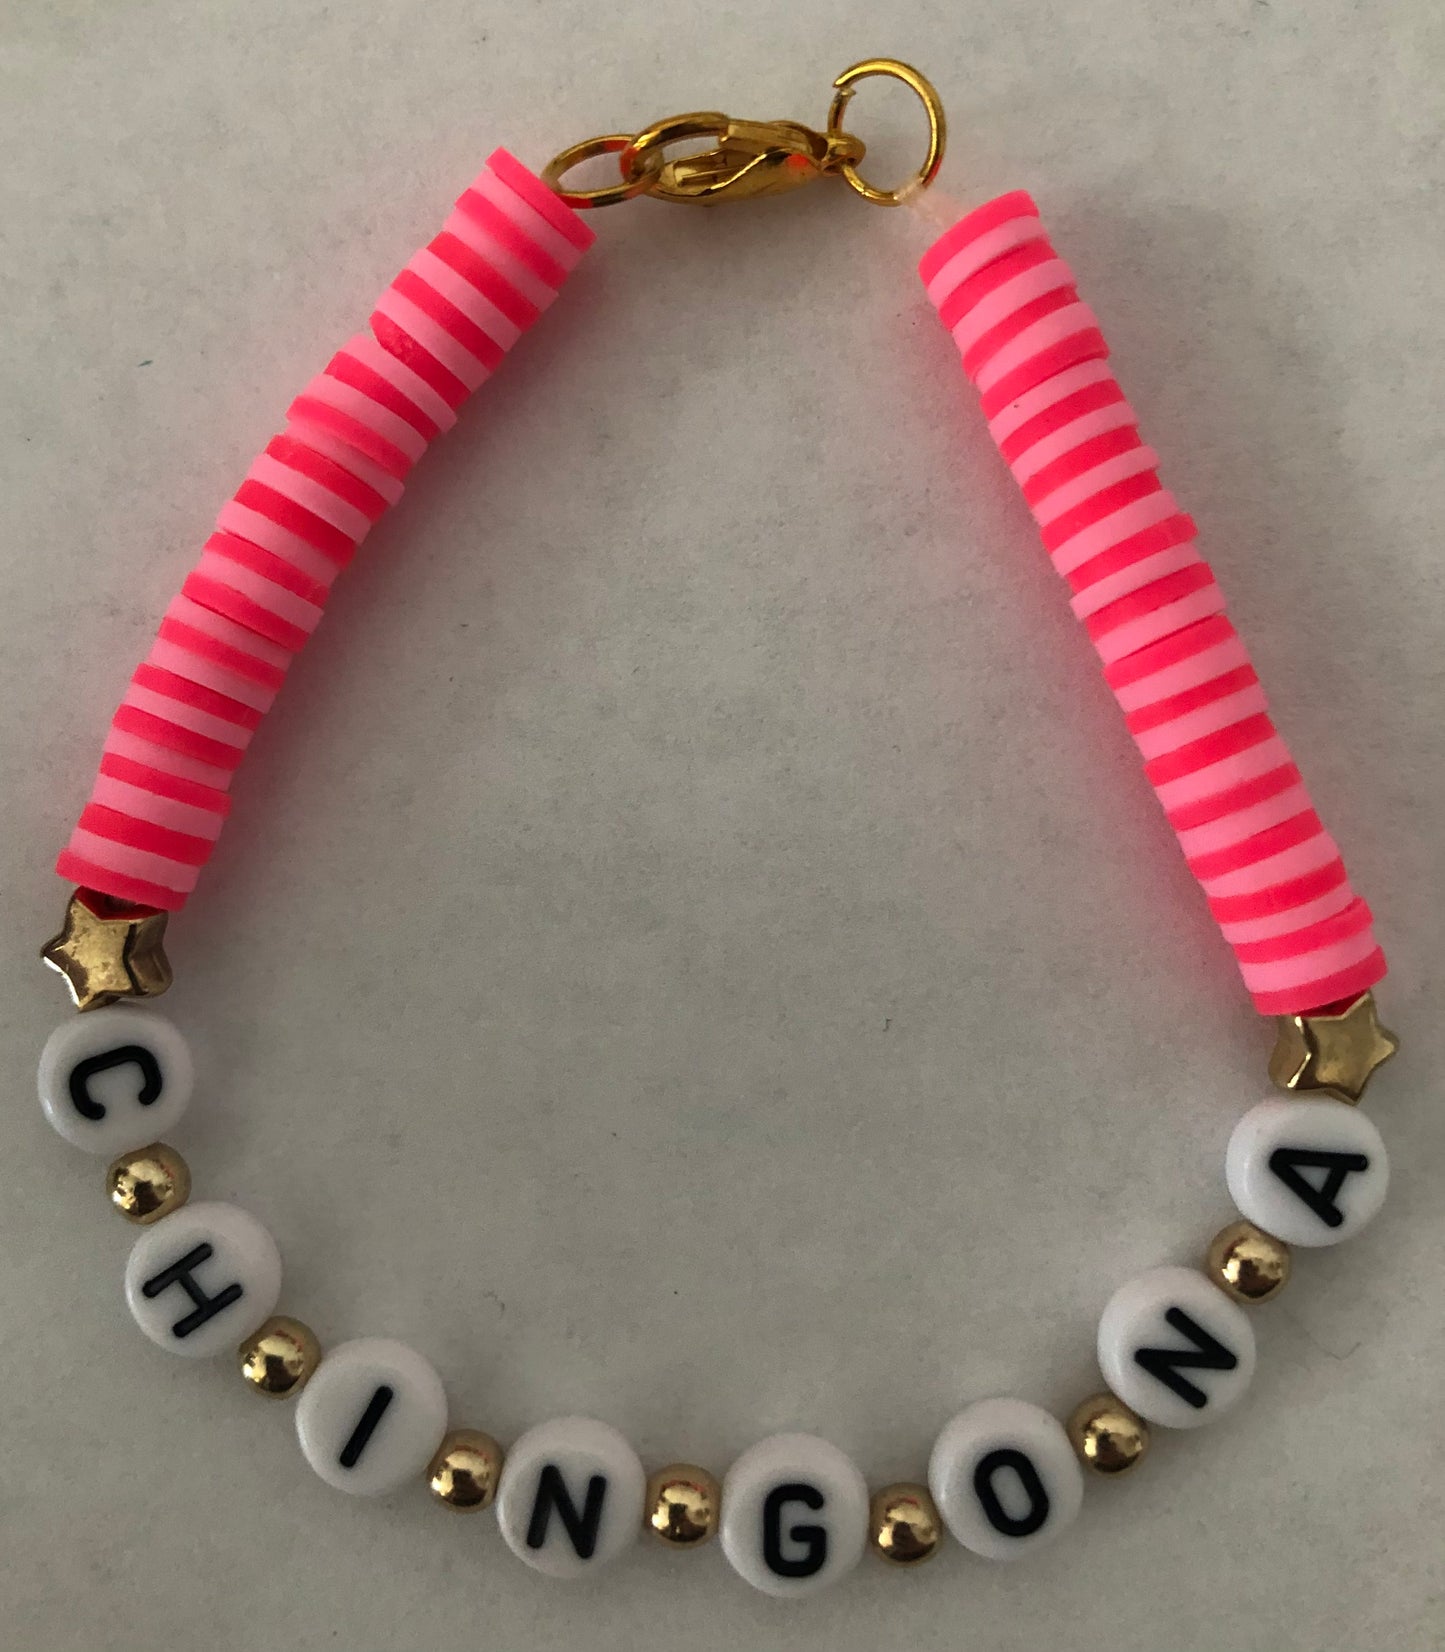 CHINGONA bracelet